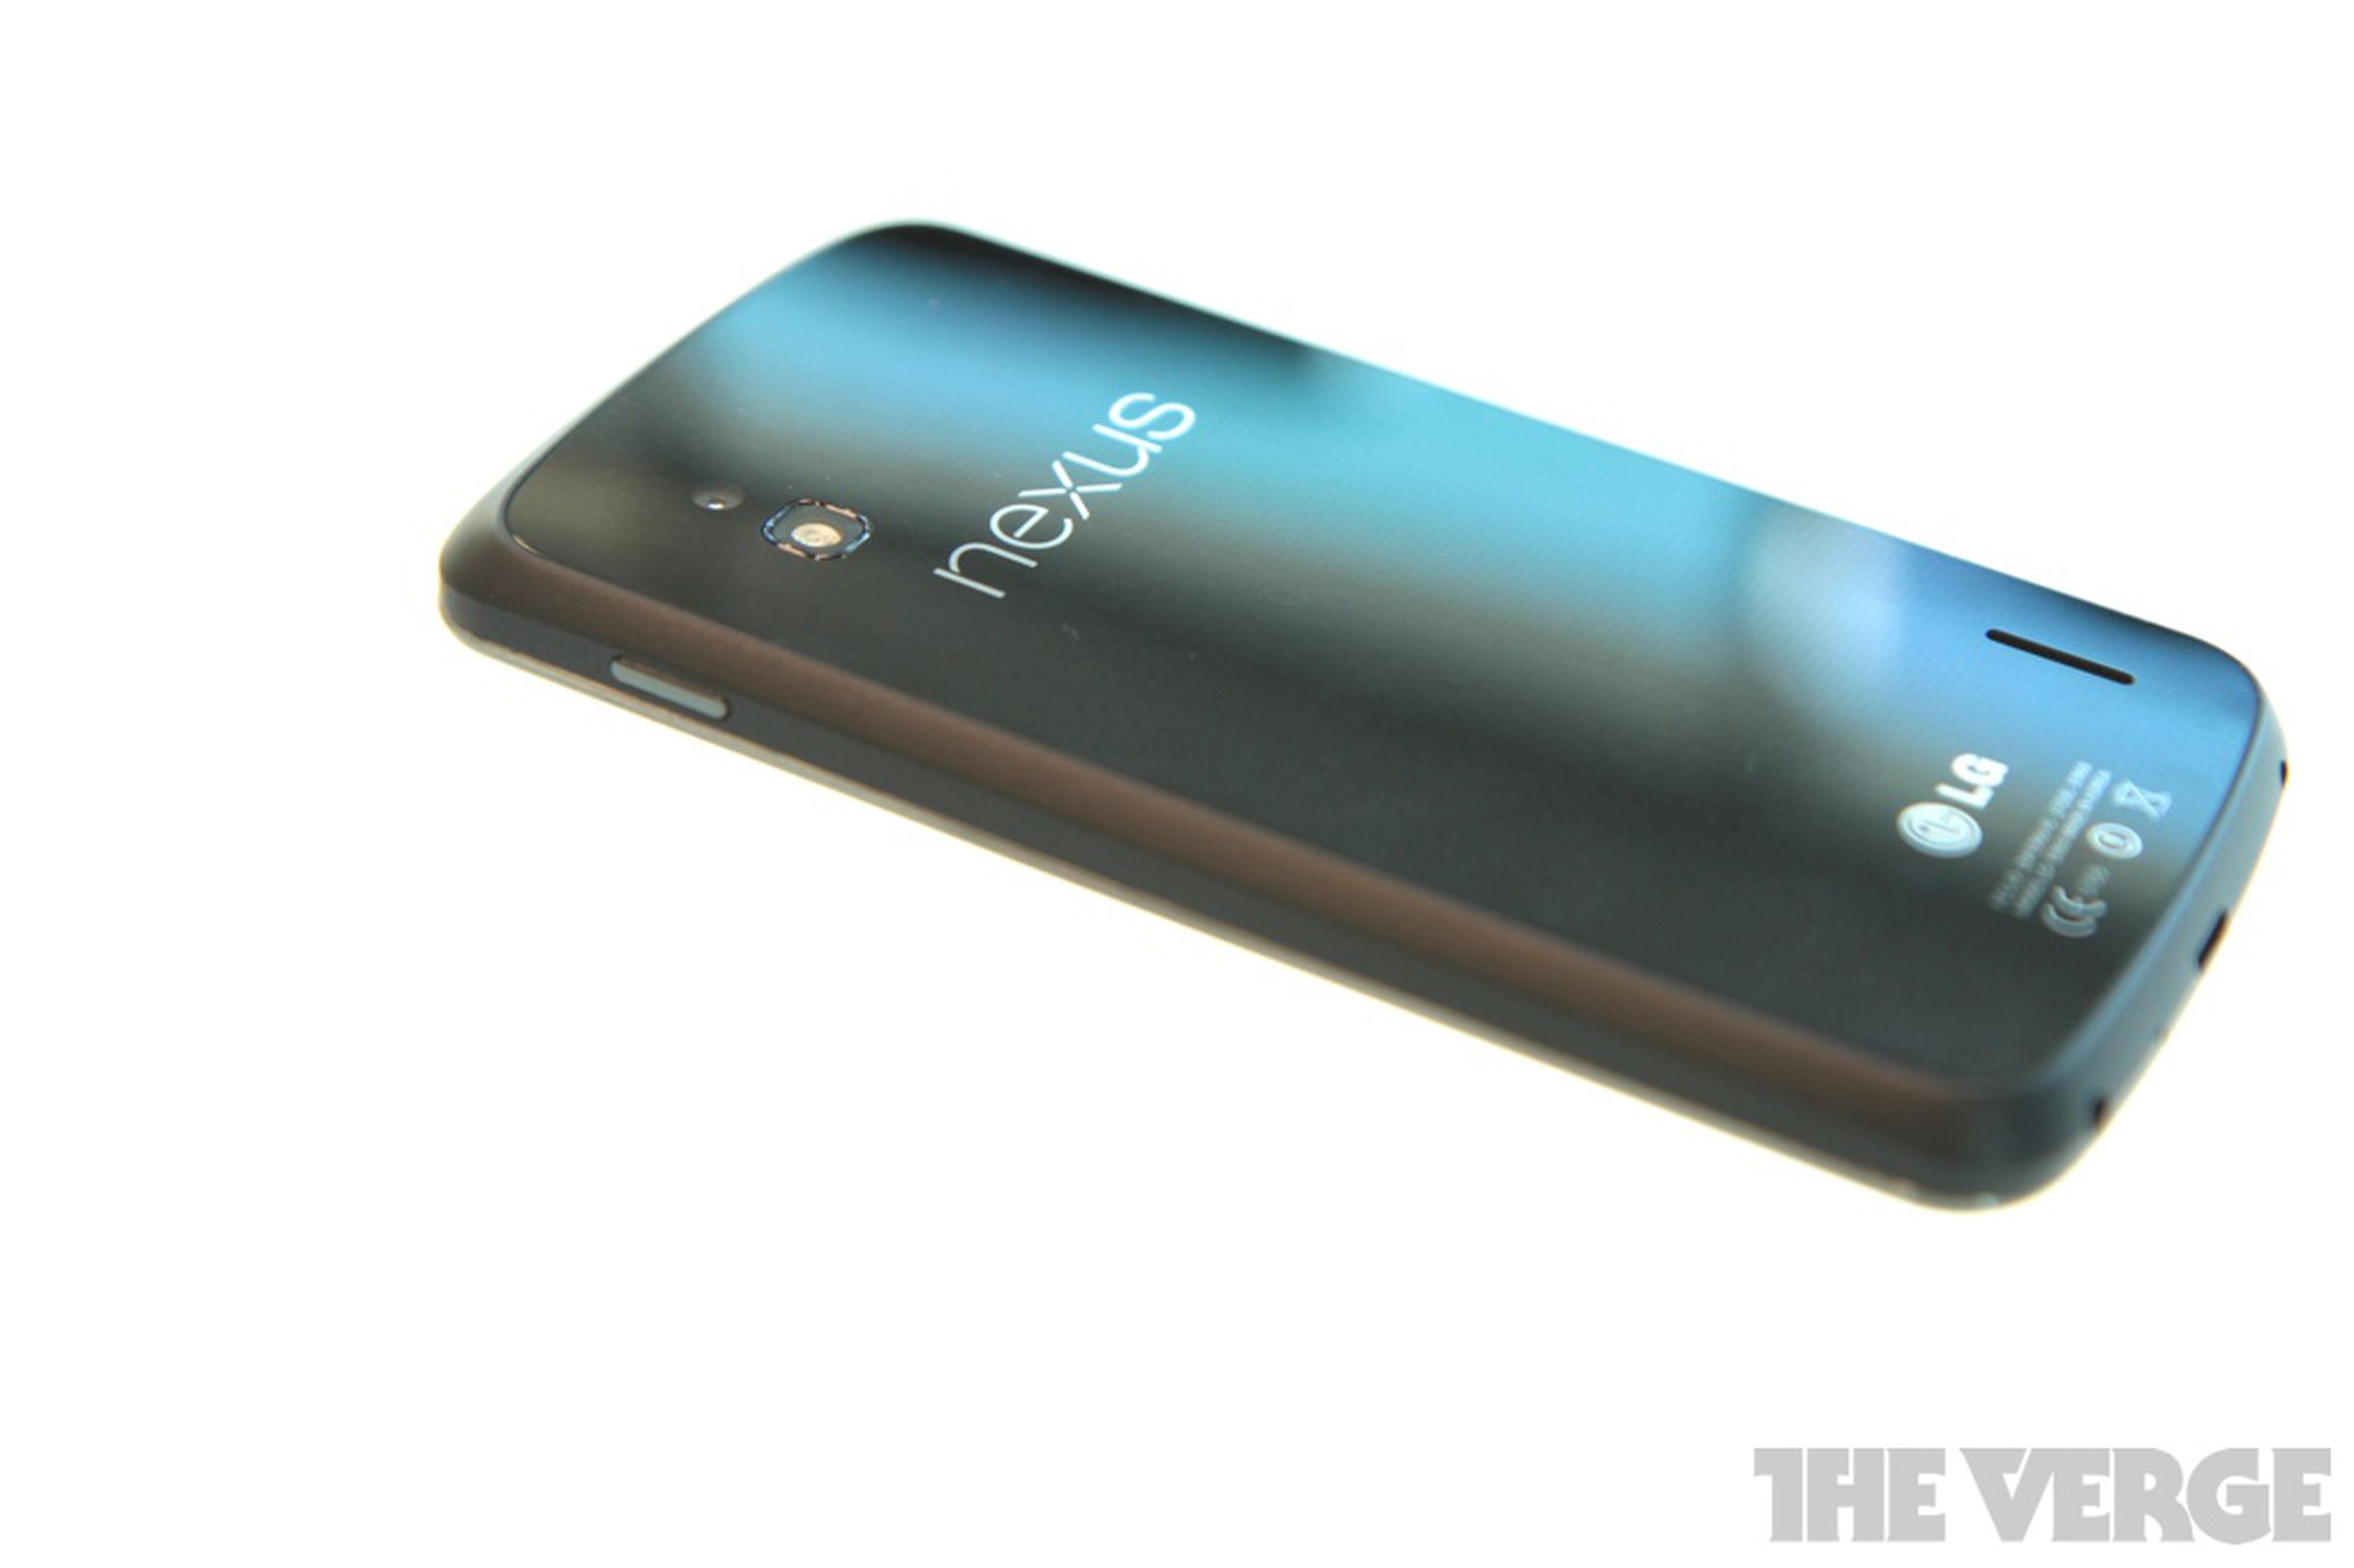 Nexus 4 hands-on photos